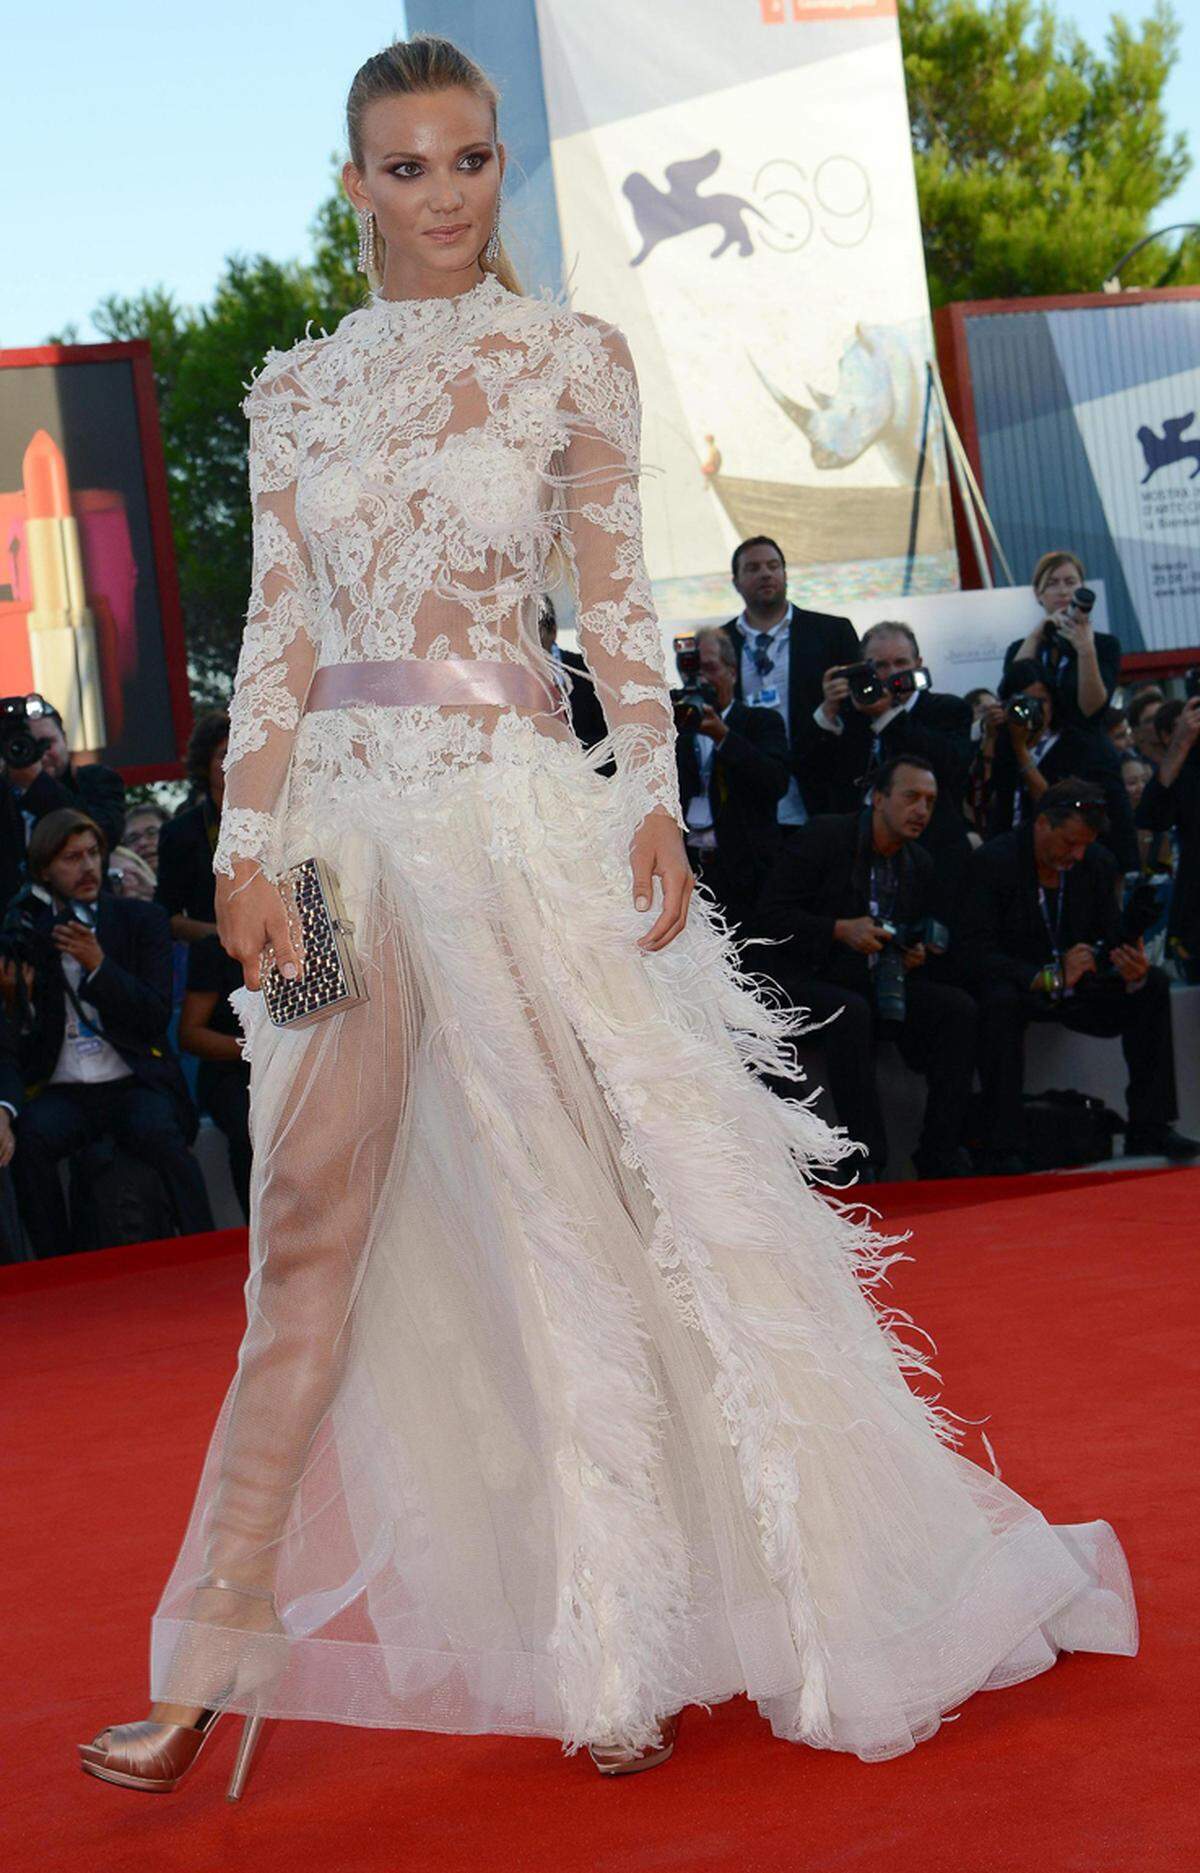 Aus dem italienischen TV bekannt, präsentierte Fiammetta Cicogna ein weißes Kleid mit Spitze und Federn.